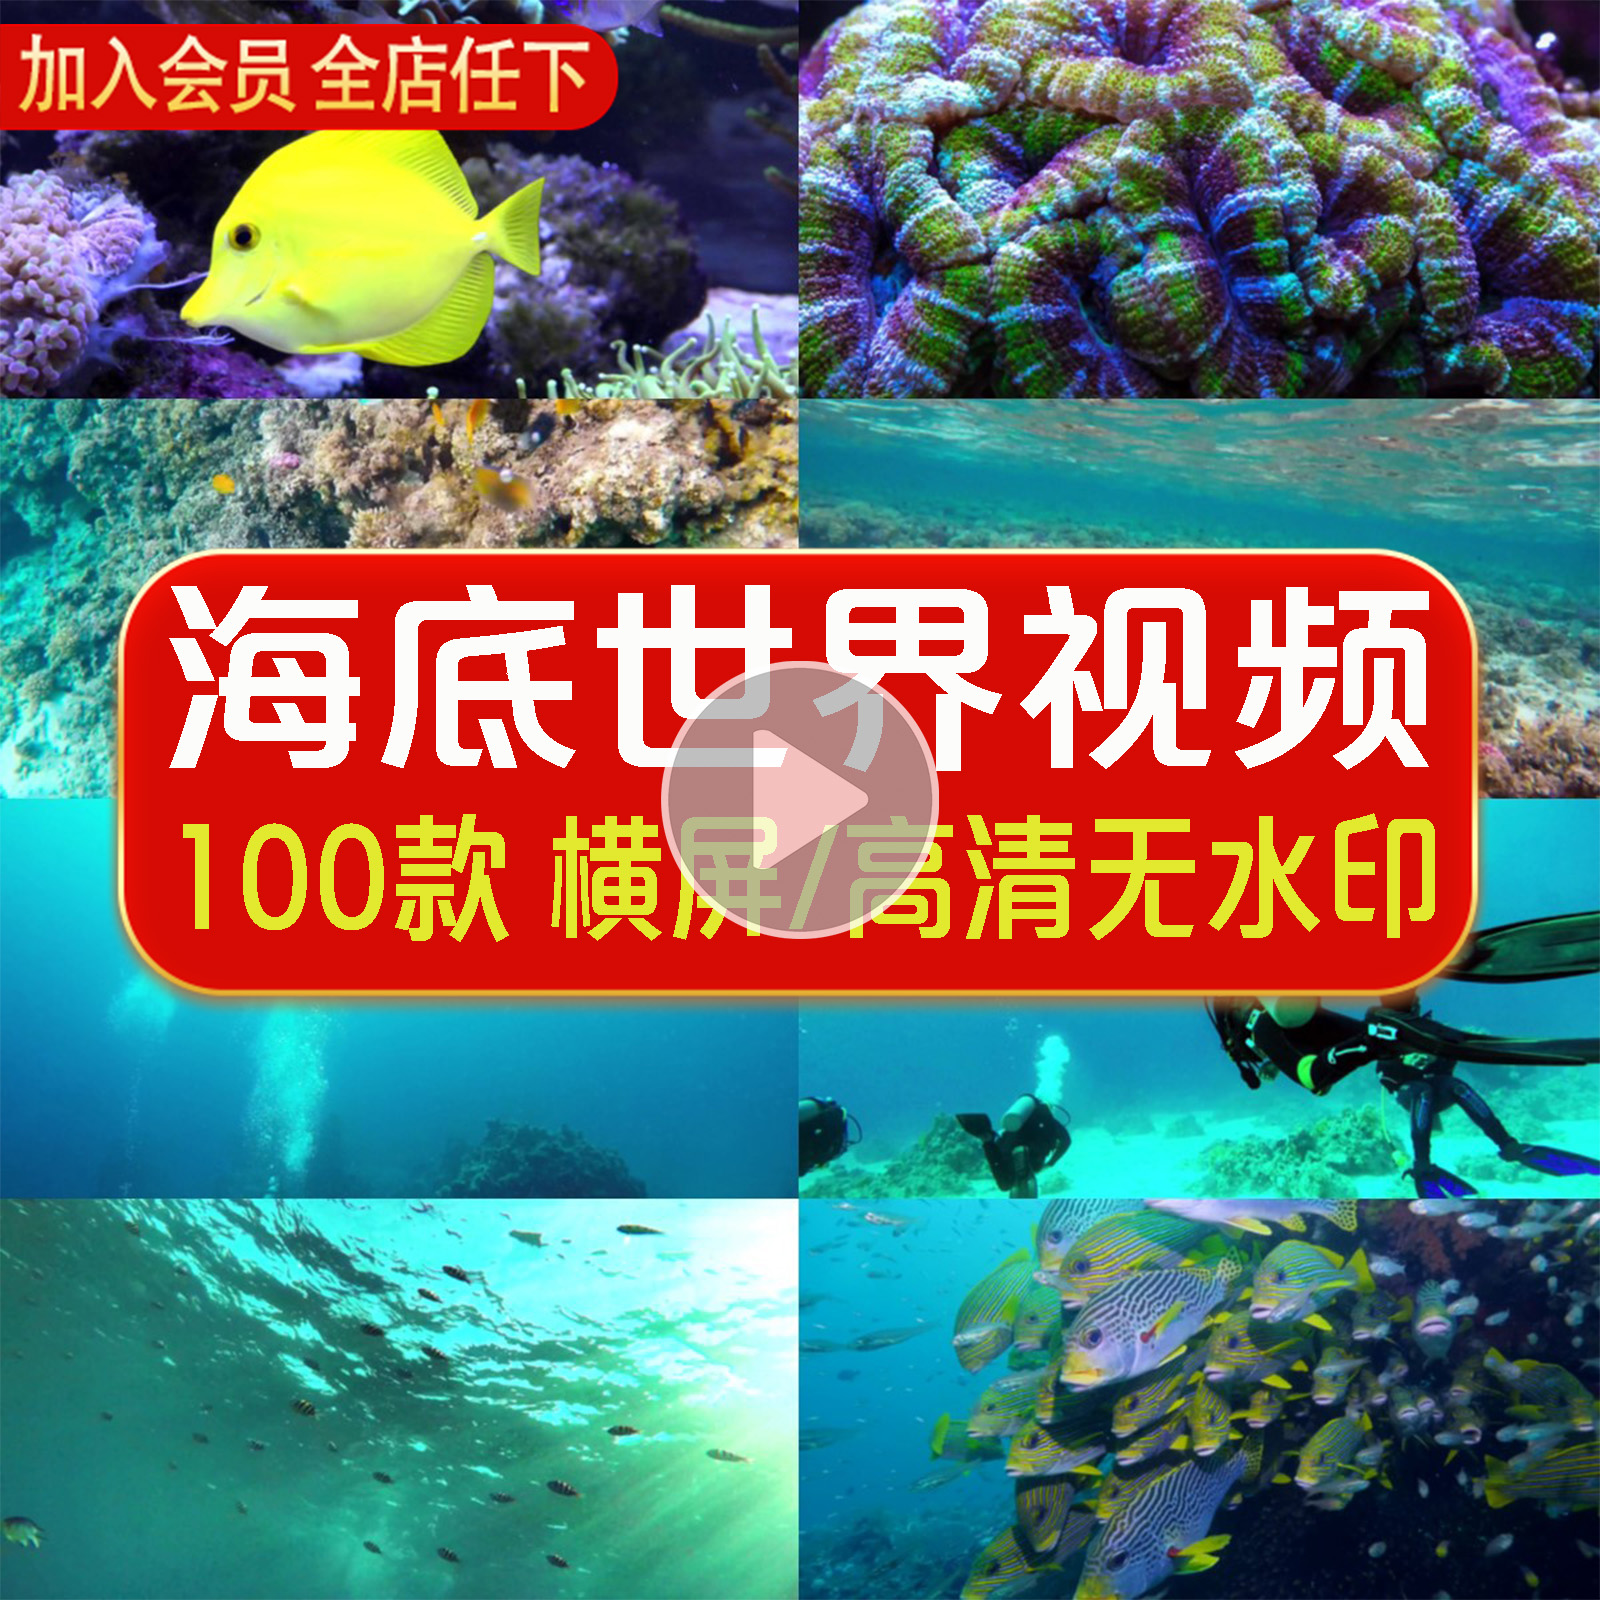 4K海底世界鱼群生活动物生物澳龙大龙虾科普自媒体短视频设计素材